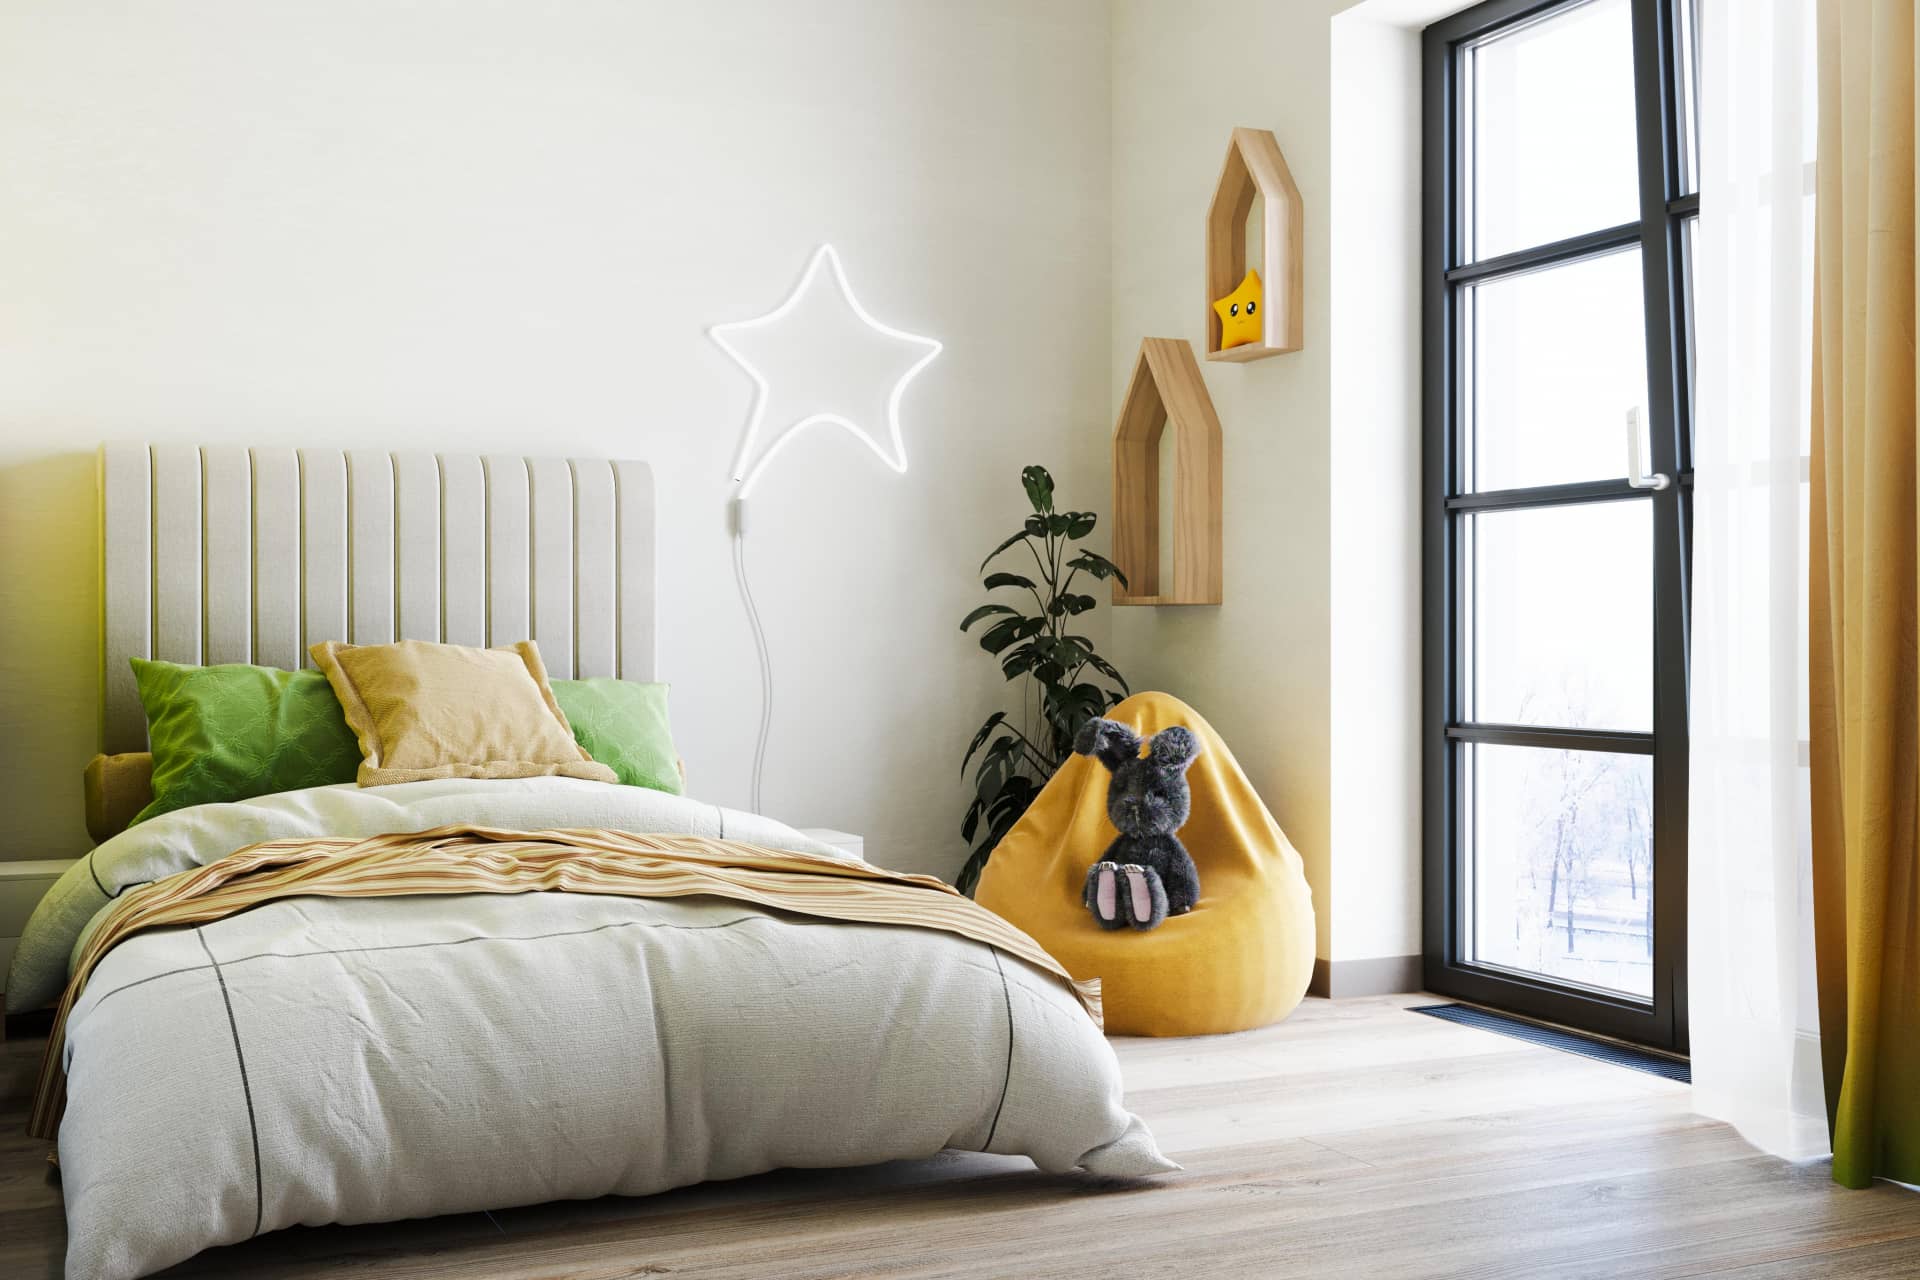 Уютная кровать с мягким изголовьем и ночник в форме звезды